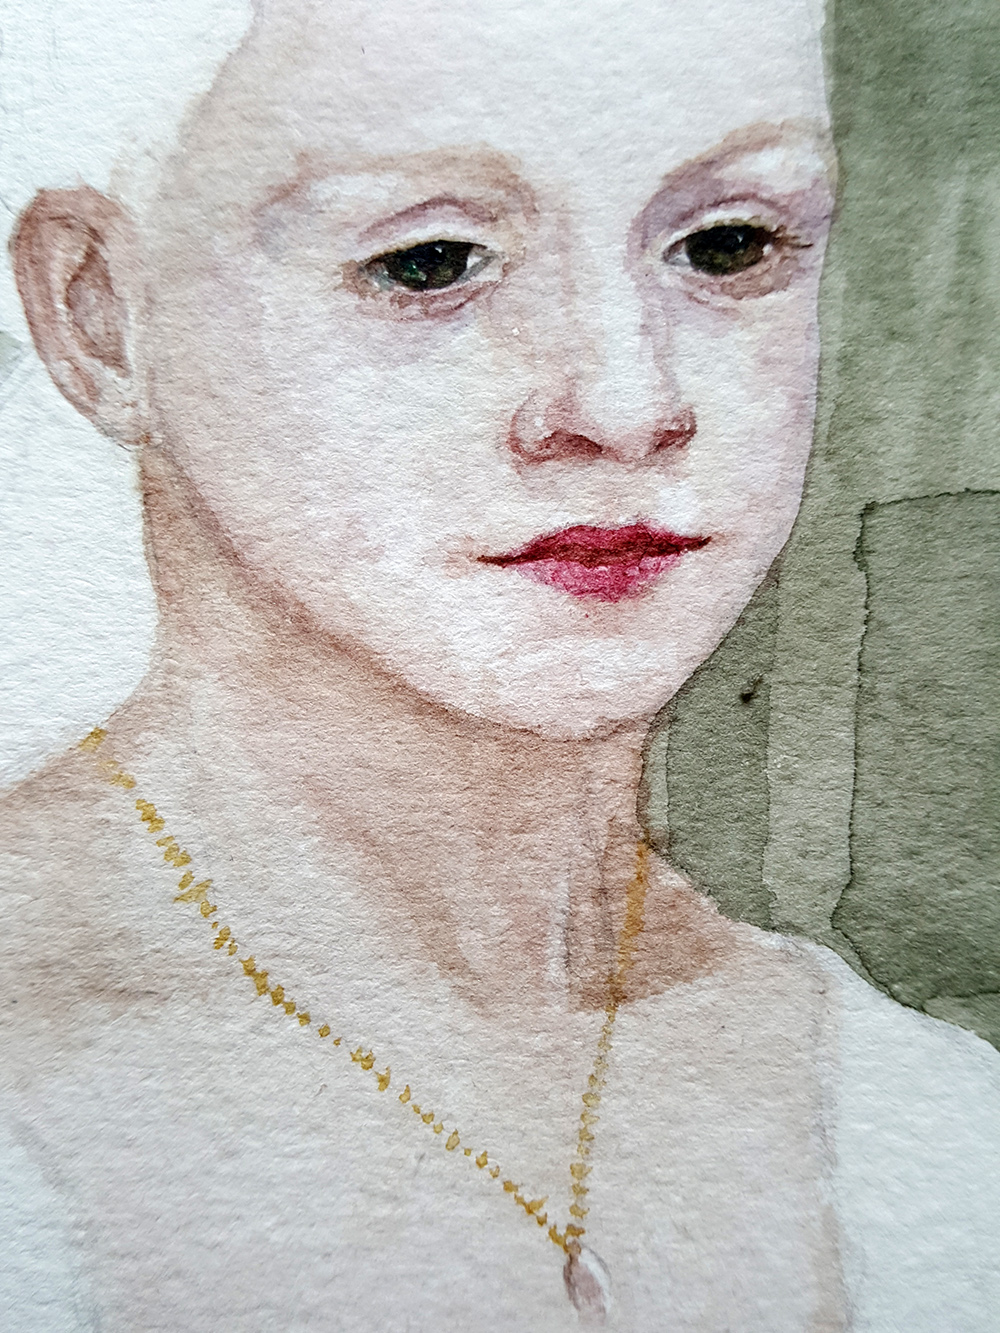 watercolour portrait